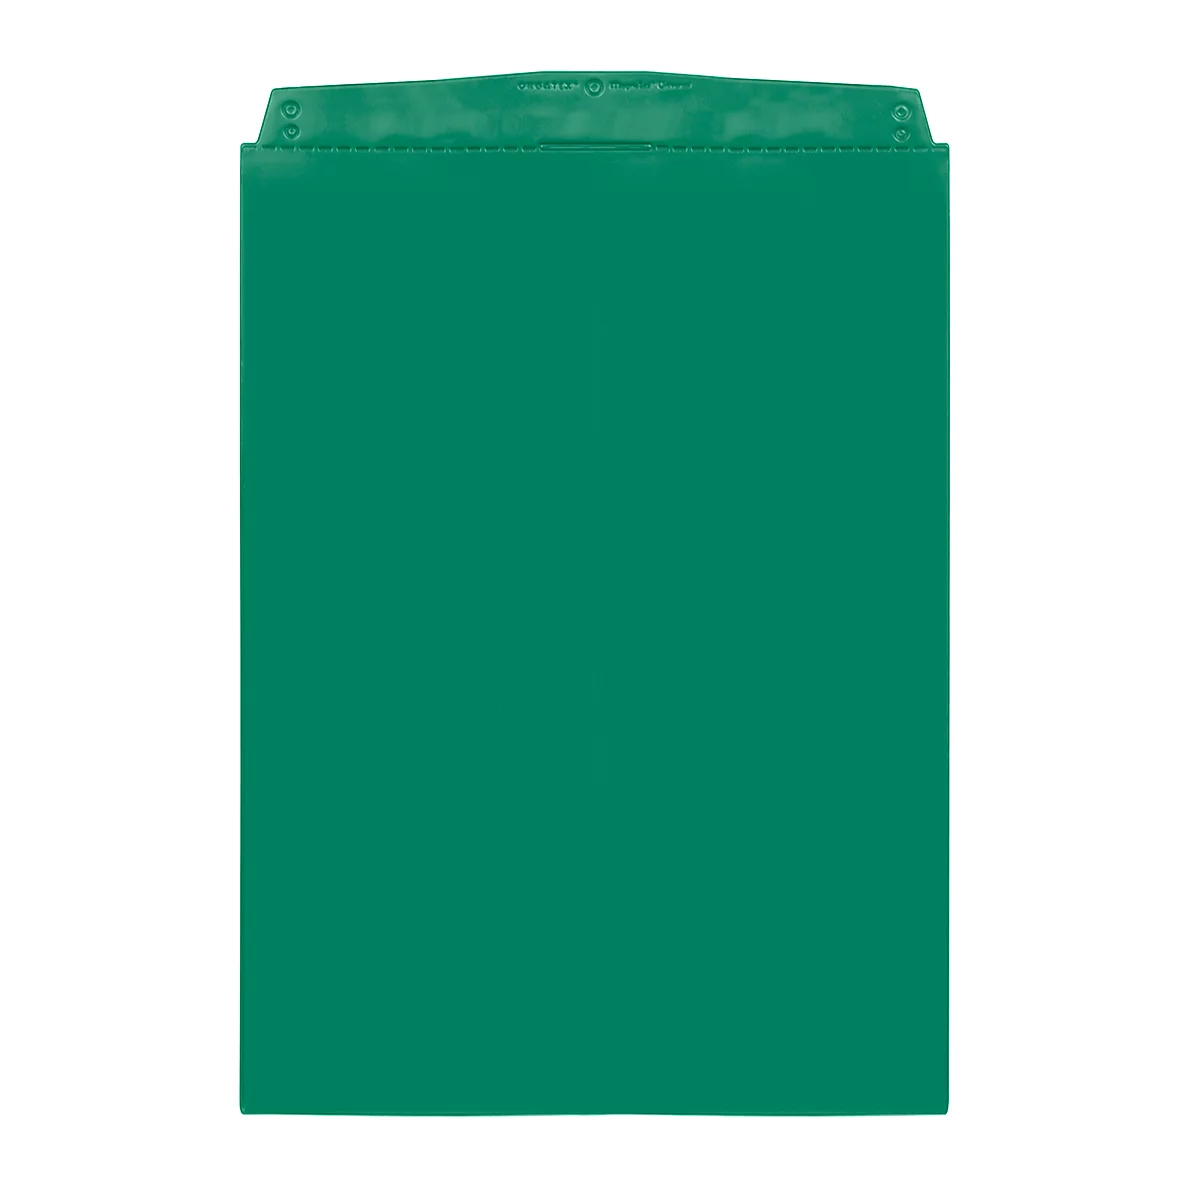 Fundas transparentes Orgatex, A4 vertical, verde, 10 uds.